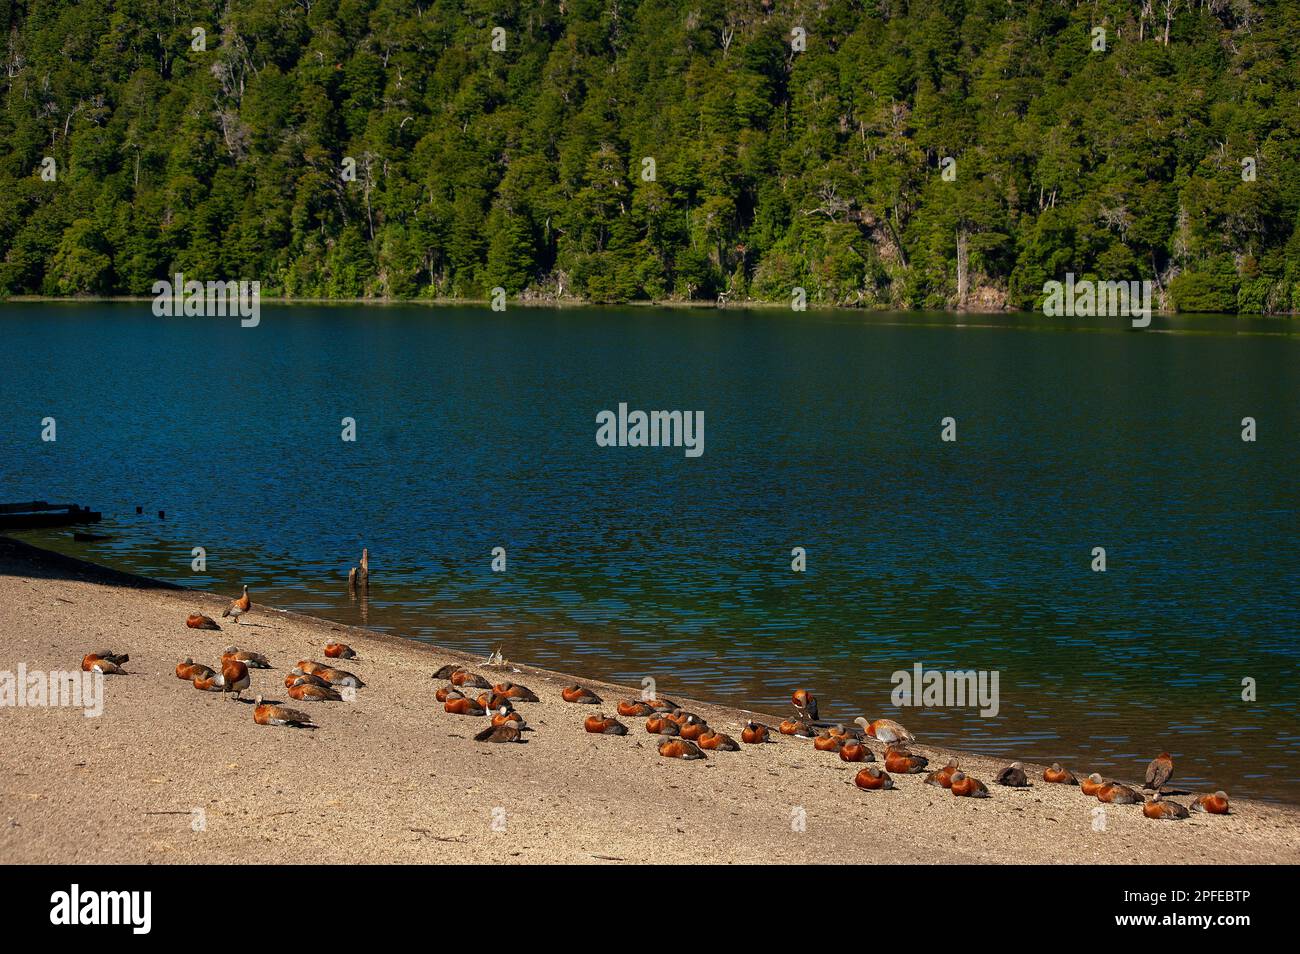 L'oca patagoniana (Ashy heded goose) è abbondante sulle rive del lago Correntoso, Neuquén, Argentina Foto Stock